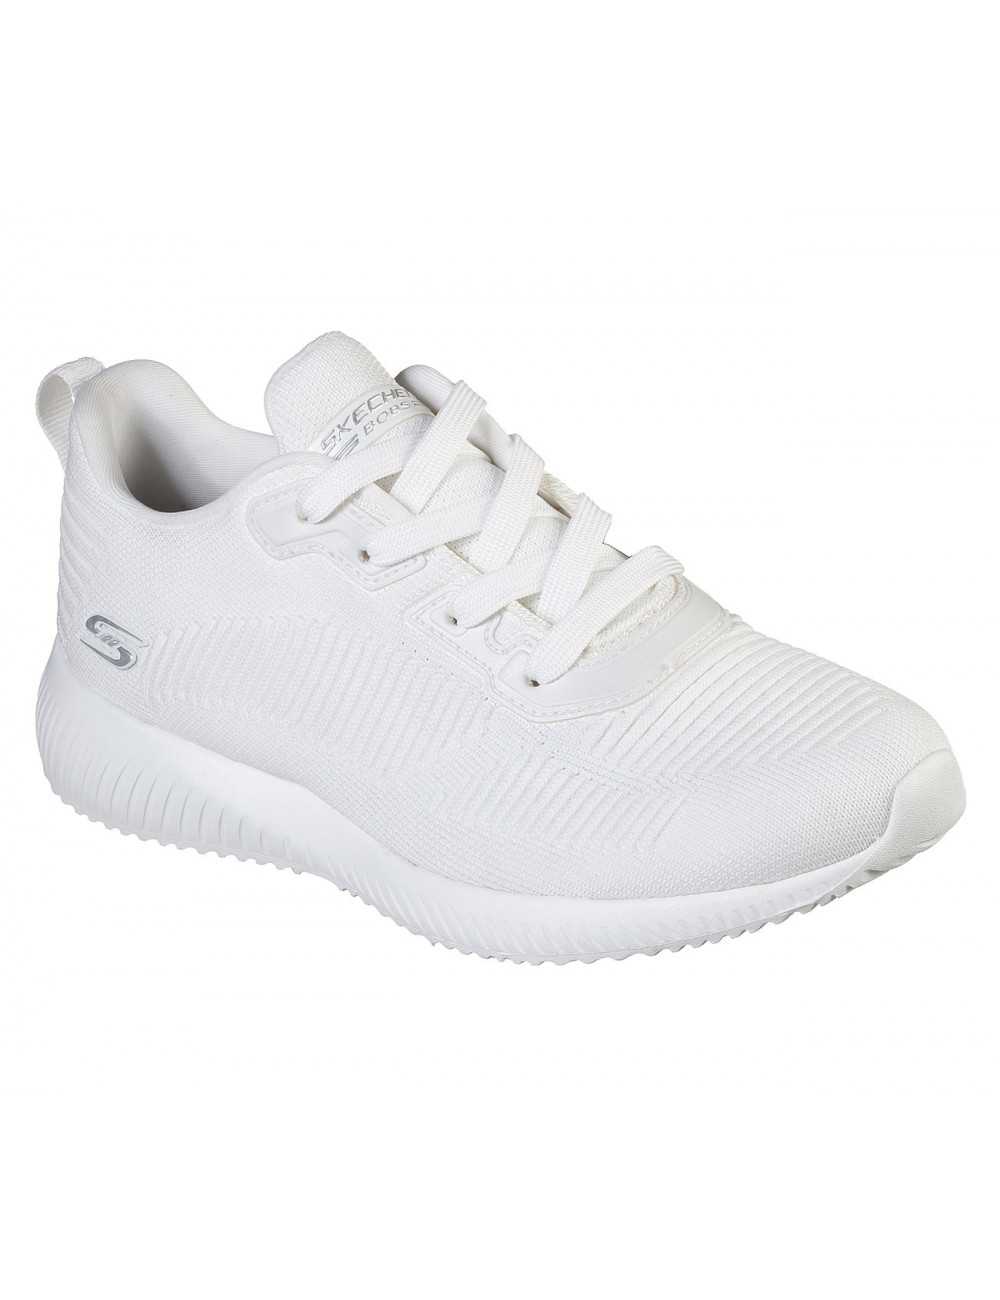 Women's Sneakers White | Skechers (32504)